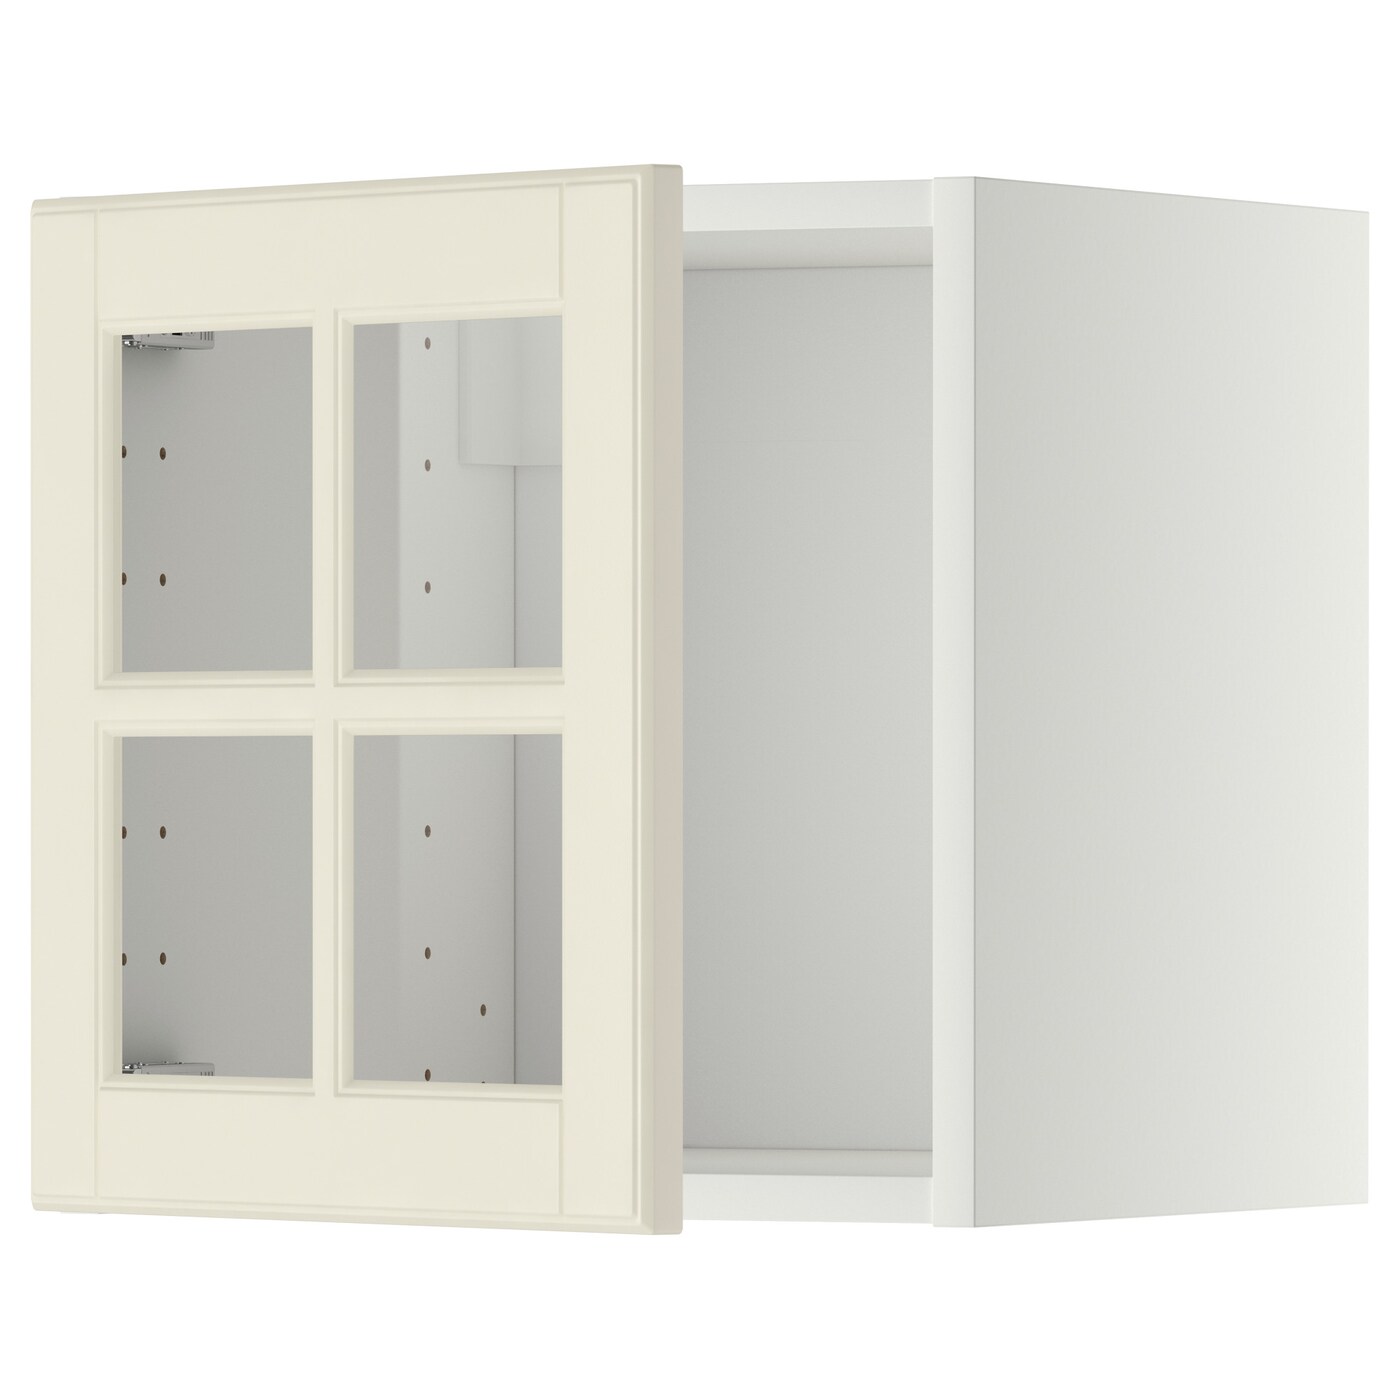 Навесной шкаф - METOD IKEA/ МЕТОД ИКЕА, 40х40 см, белы/кремовый